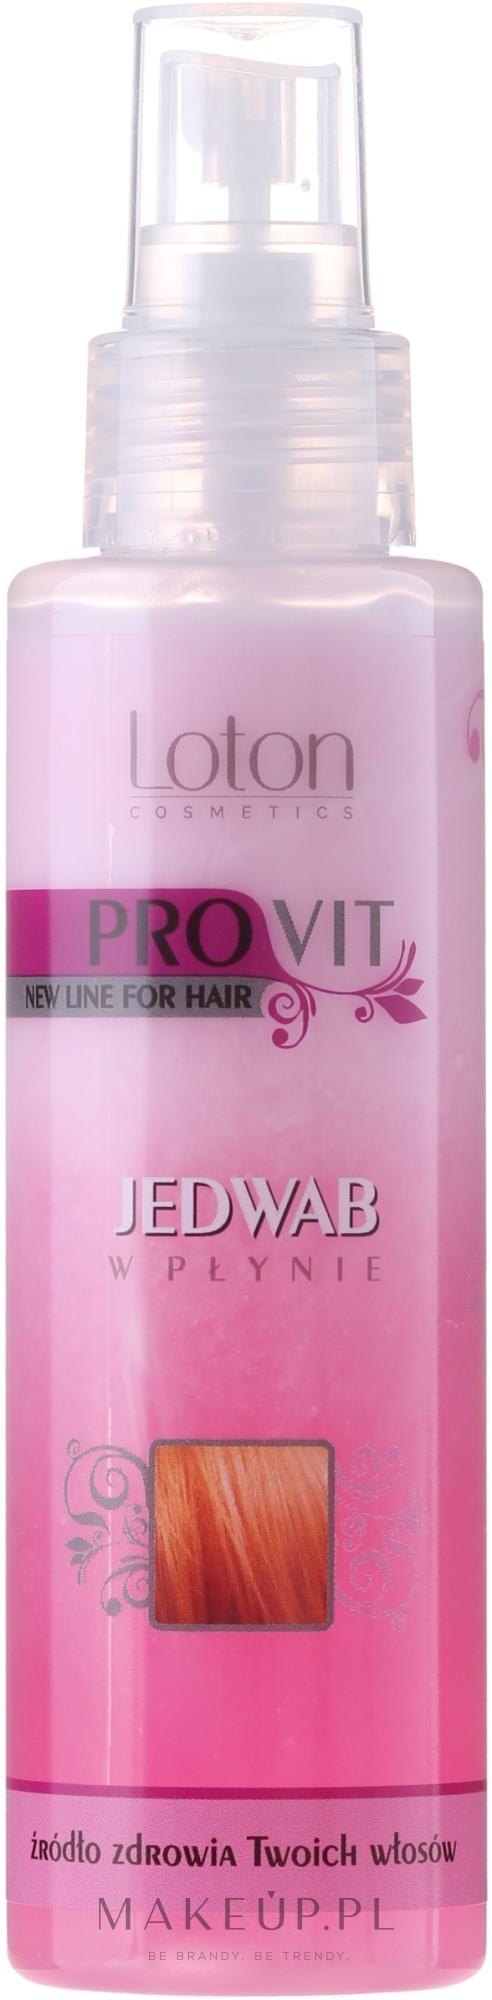 Jedwab do włosów w płynie - Loton Provit  — Zdjęcie 100 ml